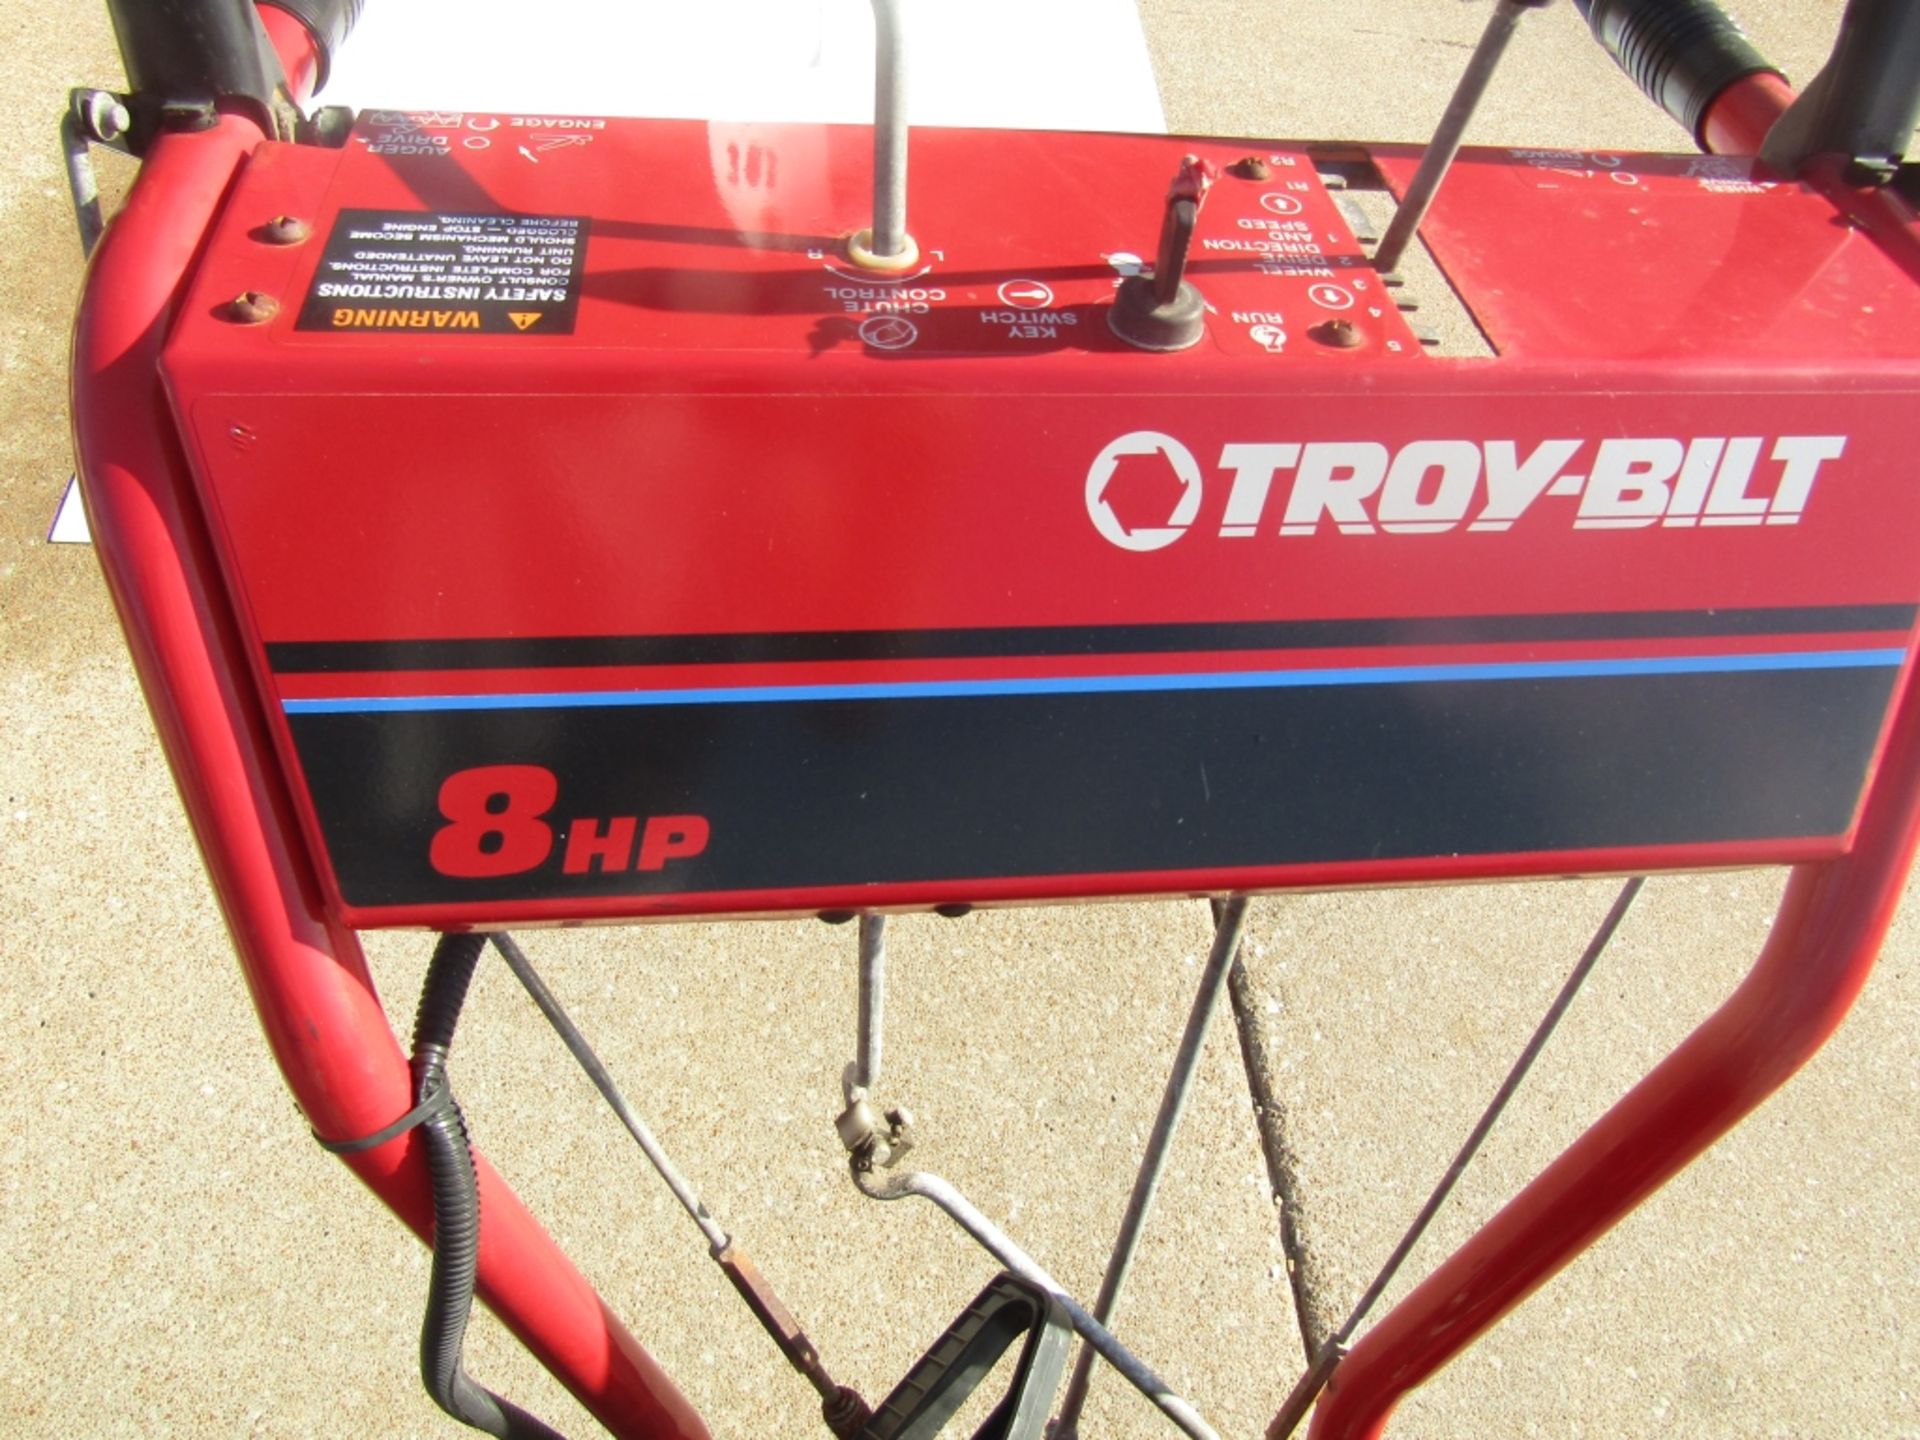 Troy-Bilt 8 HP Snow Blower, Model #42010 Serial #420100210251, Tecumseh 8.0 HP Motor - Image 2 of 6